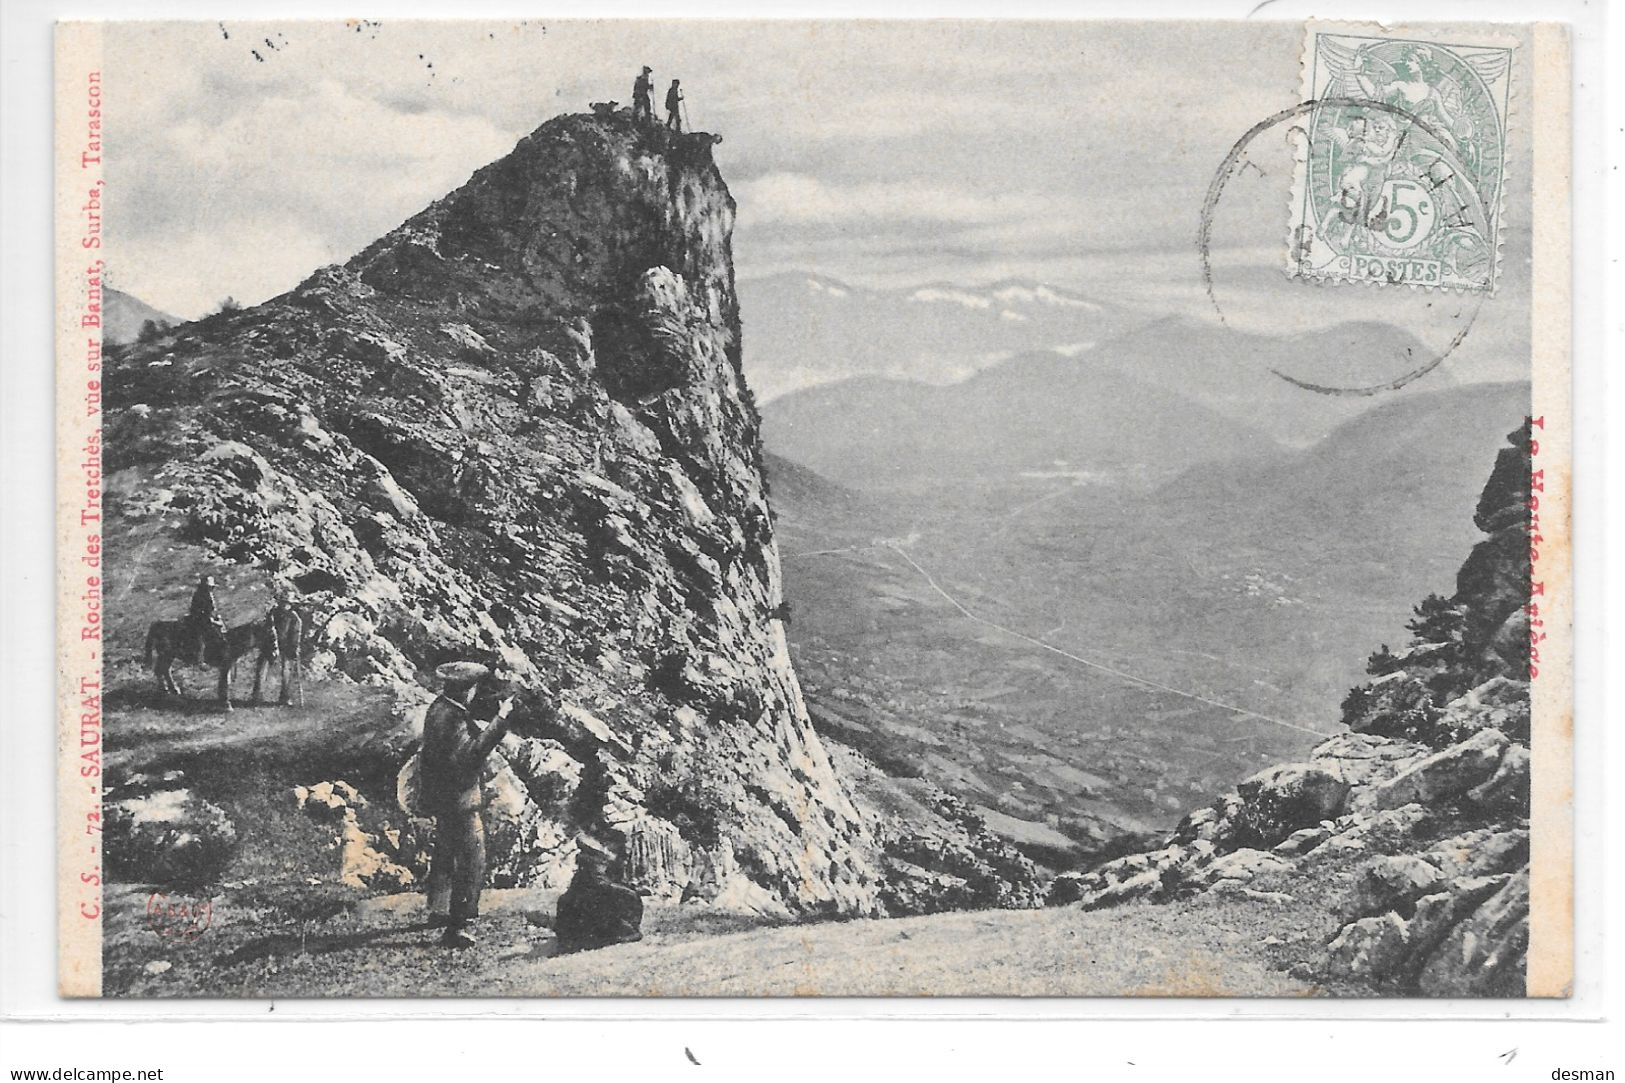 SAURAT - Roche des Iretches- Vue sur Banat, Surba, Tarascon - C.S. N°72 (Clément SANS)